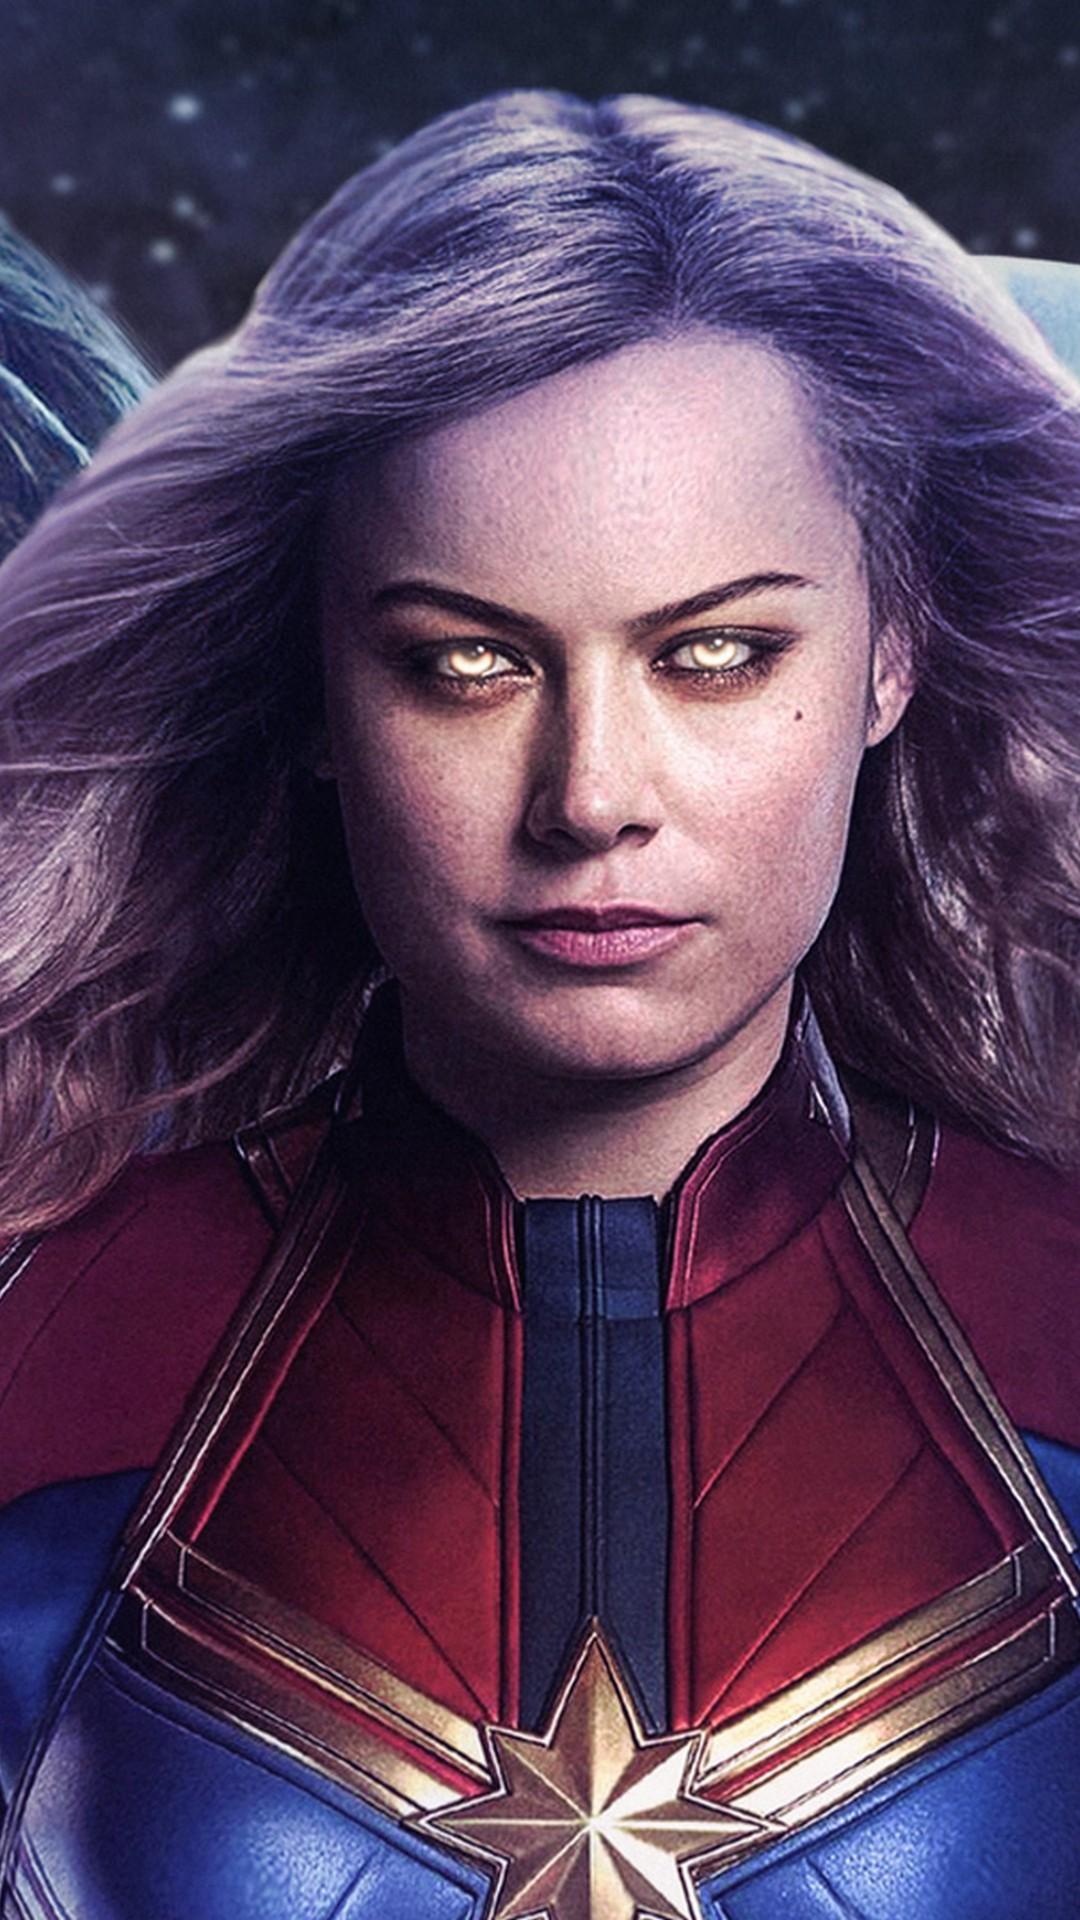 Captain Marvel Avengers Endgame iPhone Wallpaper Movie Poster Wallpaper HD